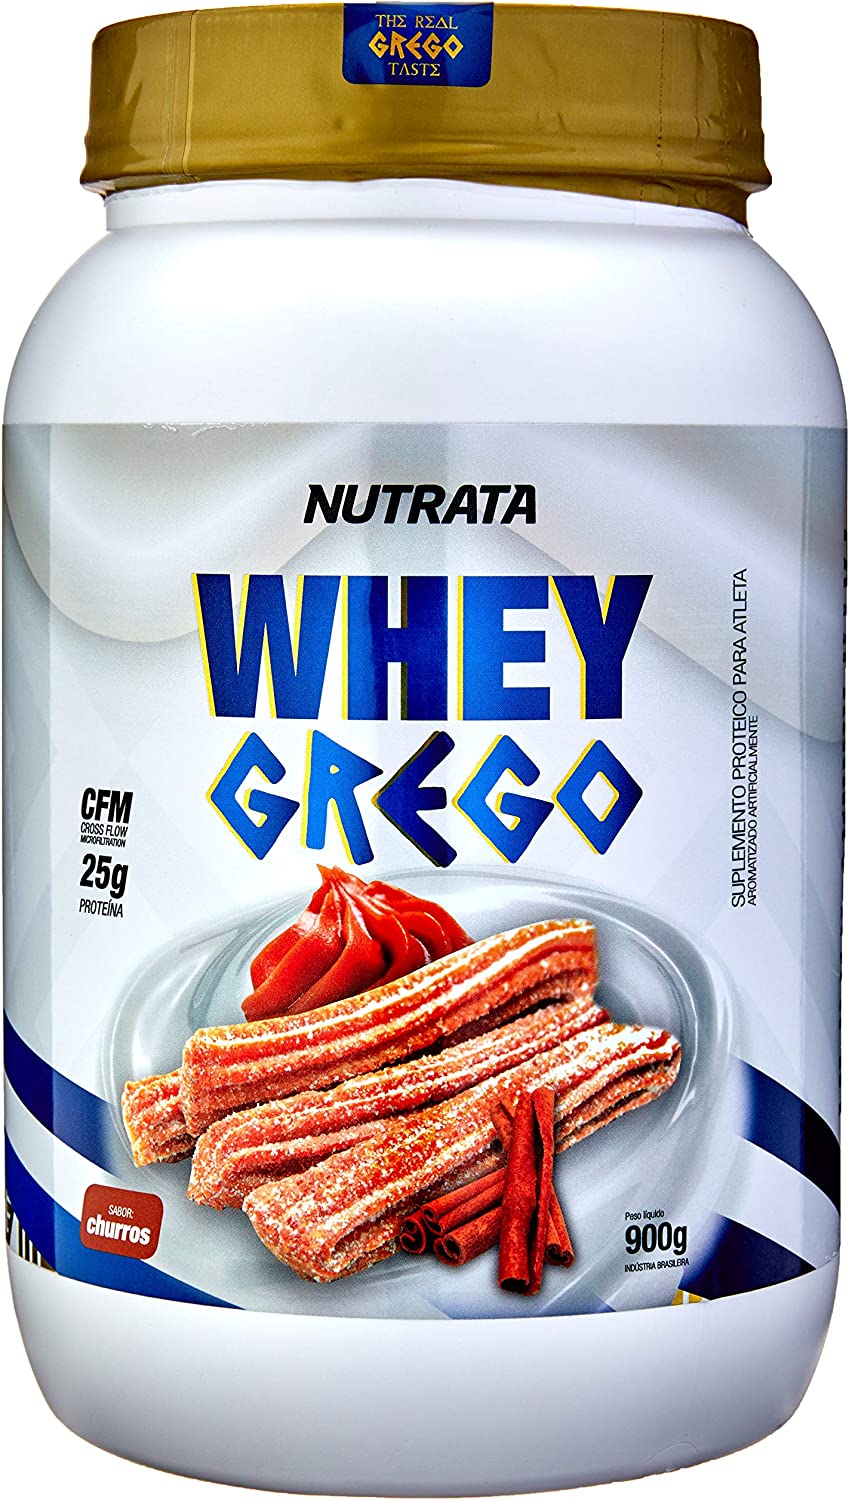 Whey Grego (900G) – Sabor Churros, Nutrata